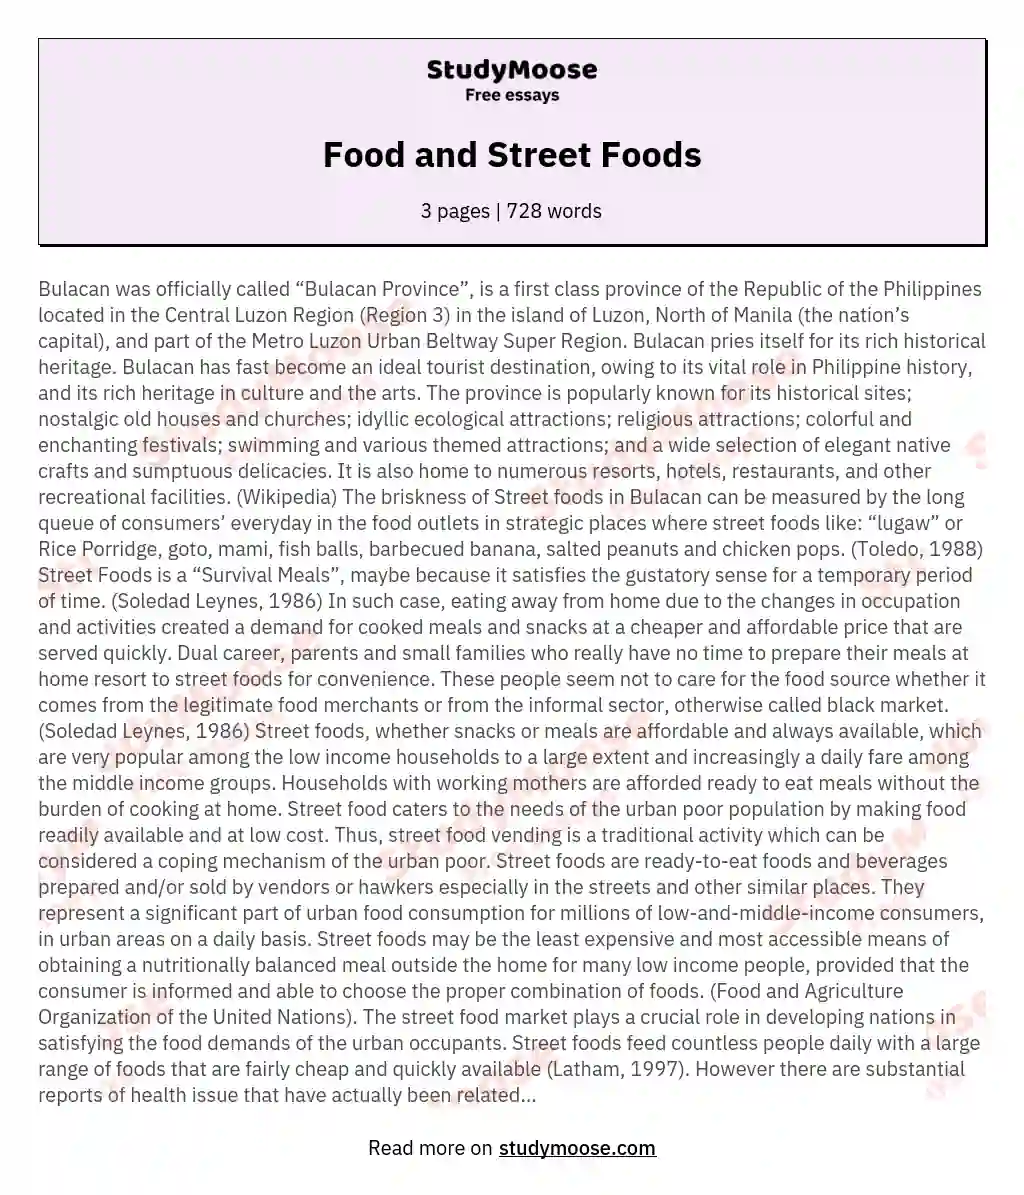 Food and Street Foods essay